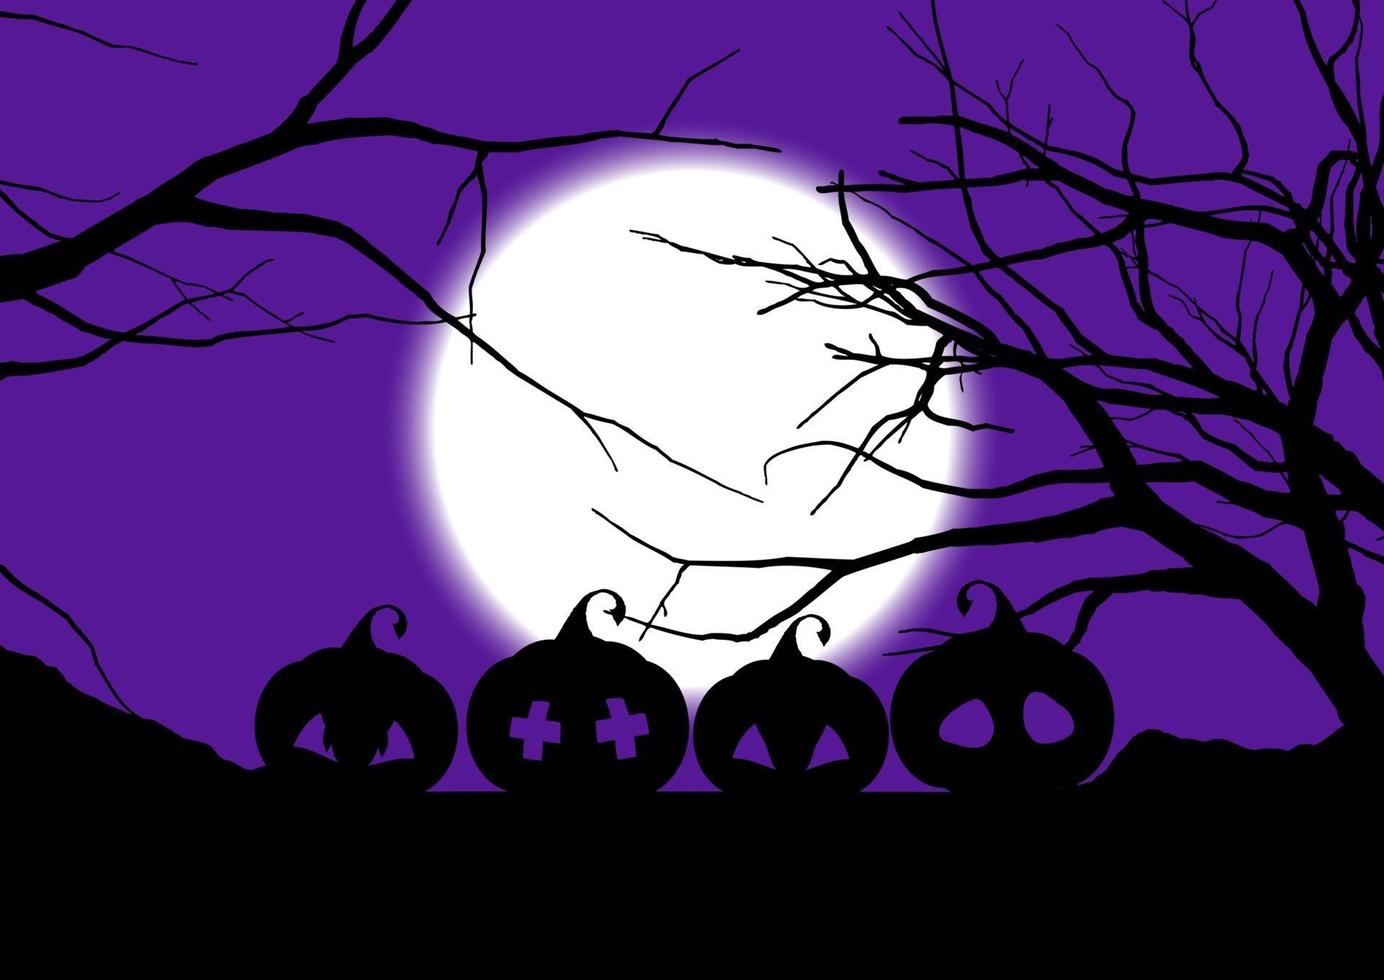 Halloween background with spooky pumpkins 0309 vector